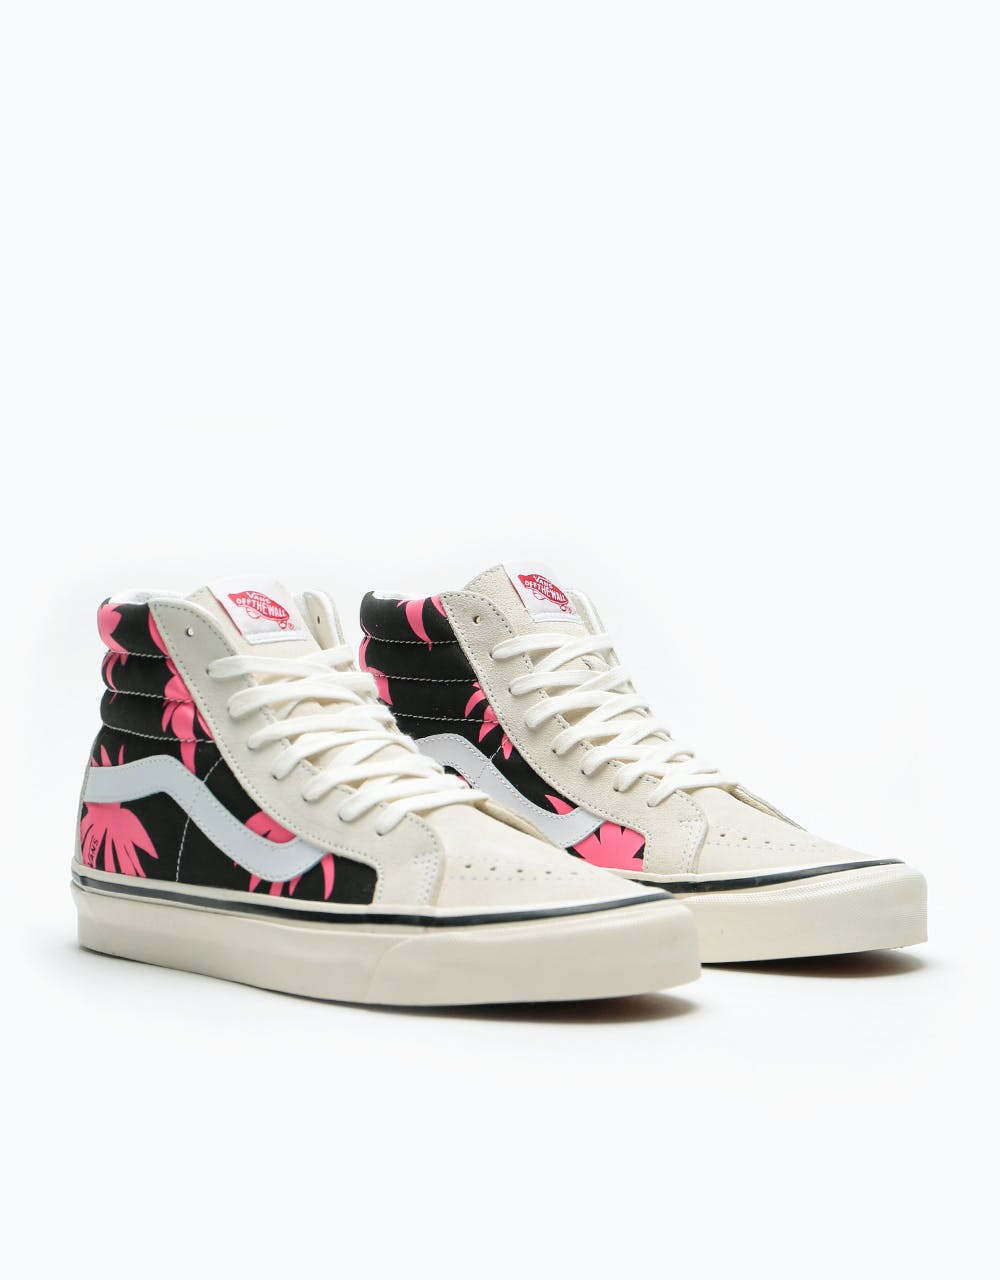 Vans Sk8-Hi 38 DX Skate Shoes - (Anaheim Factory) OG White/OG Black/Summer Leaf